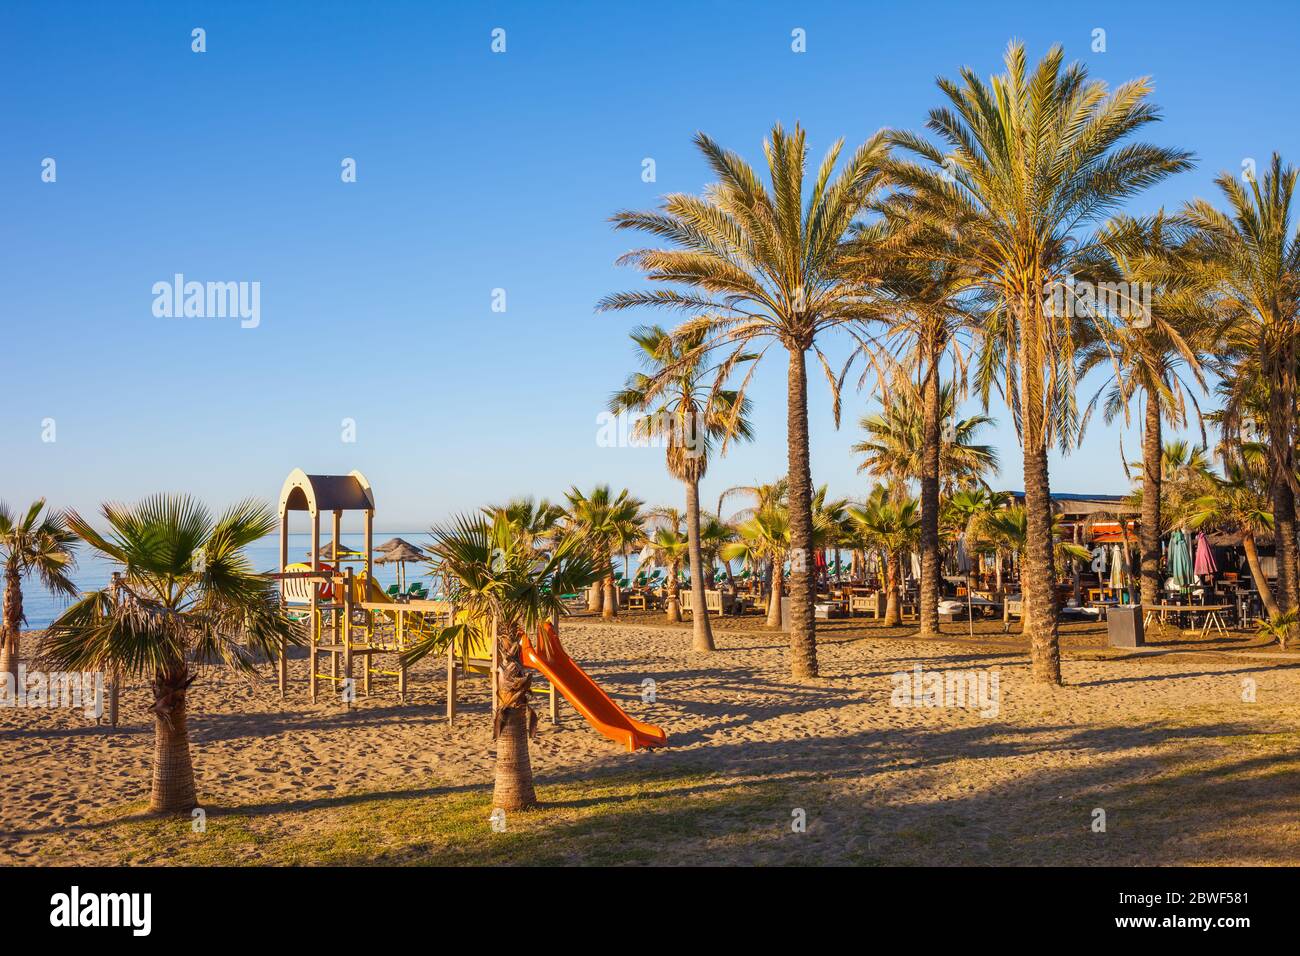 Playa en la Costa del Sol en Marbella, España, paisaje de vacaciones de verano con palmeras y parque infantil, temprano por la mañana Foto de stock